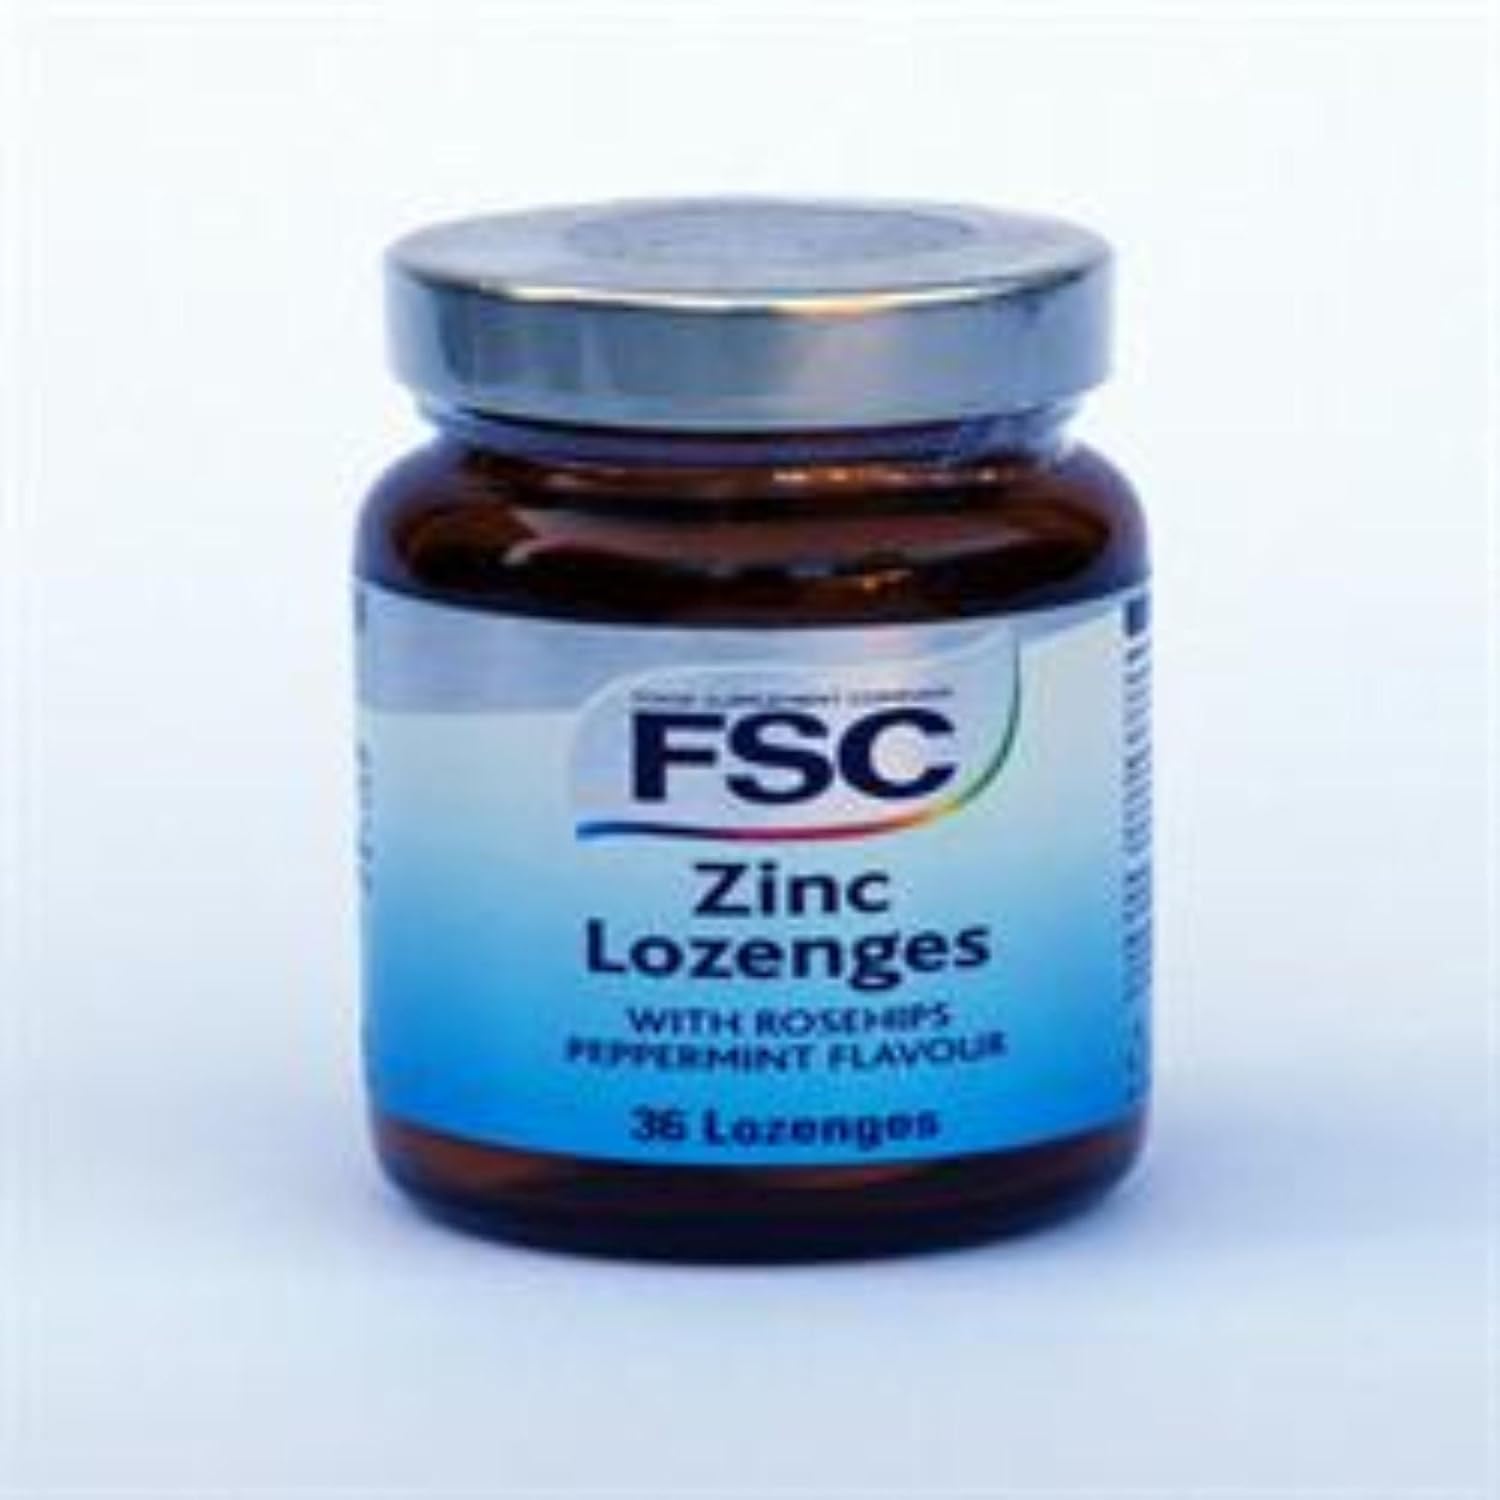 FSC Zinc 36 Lozenges

